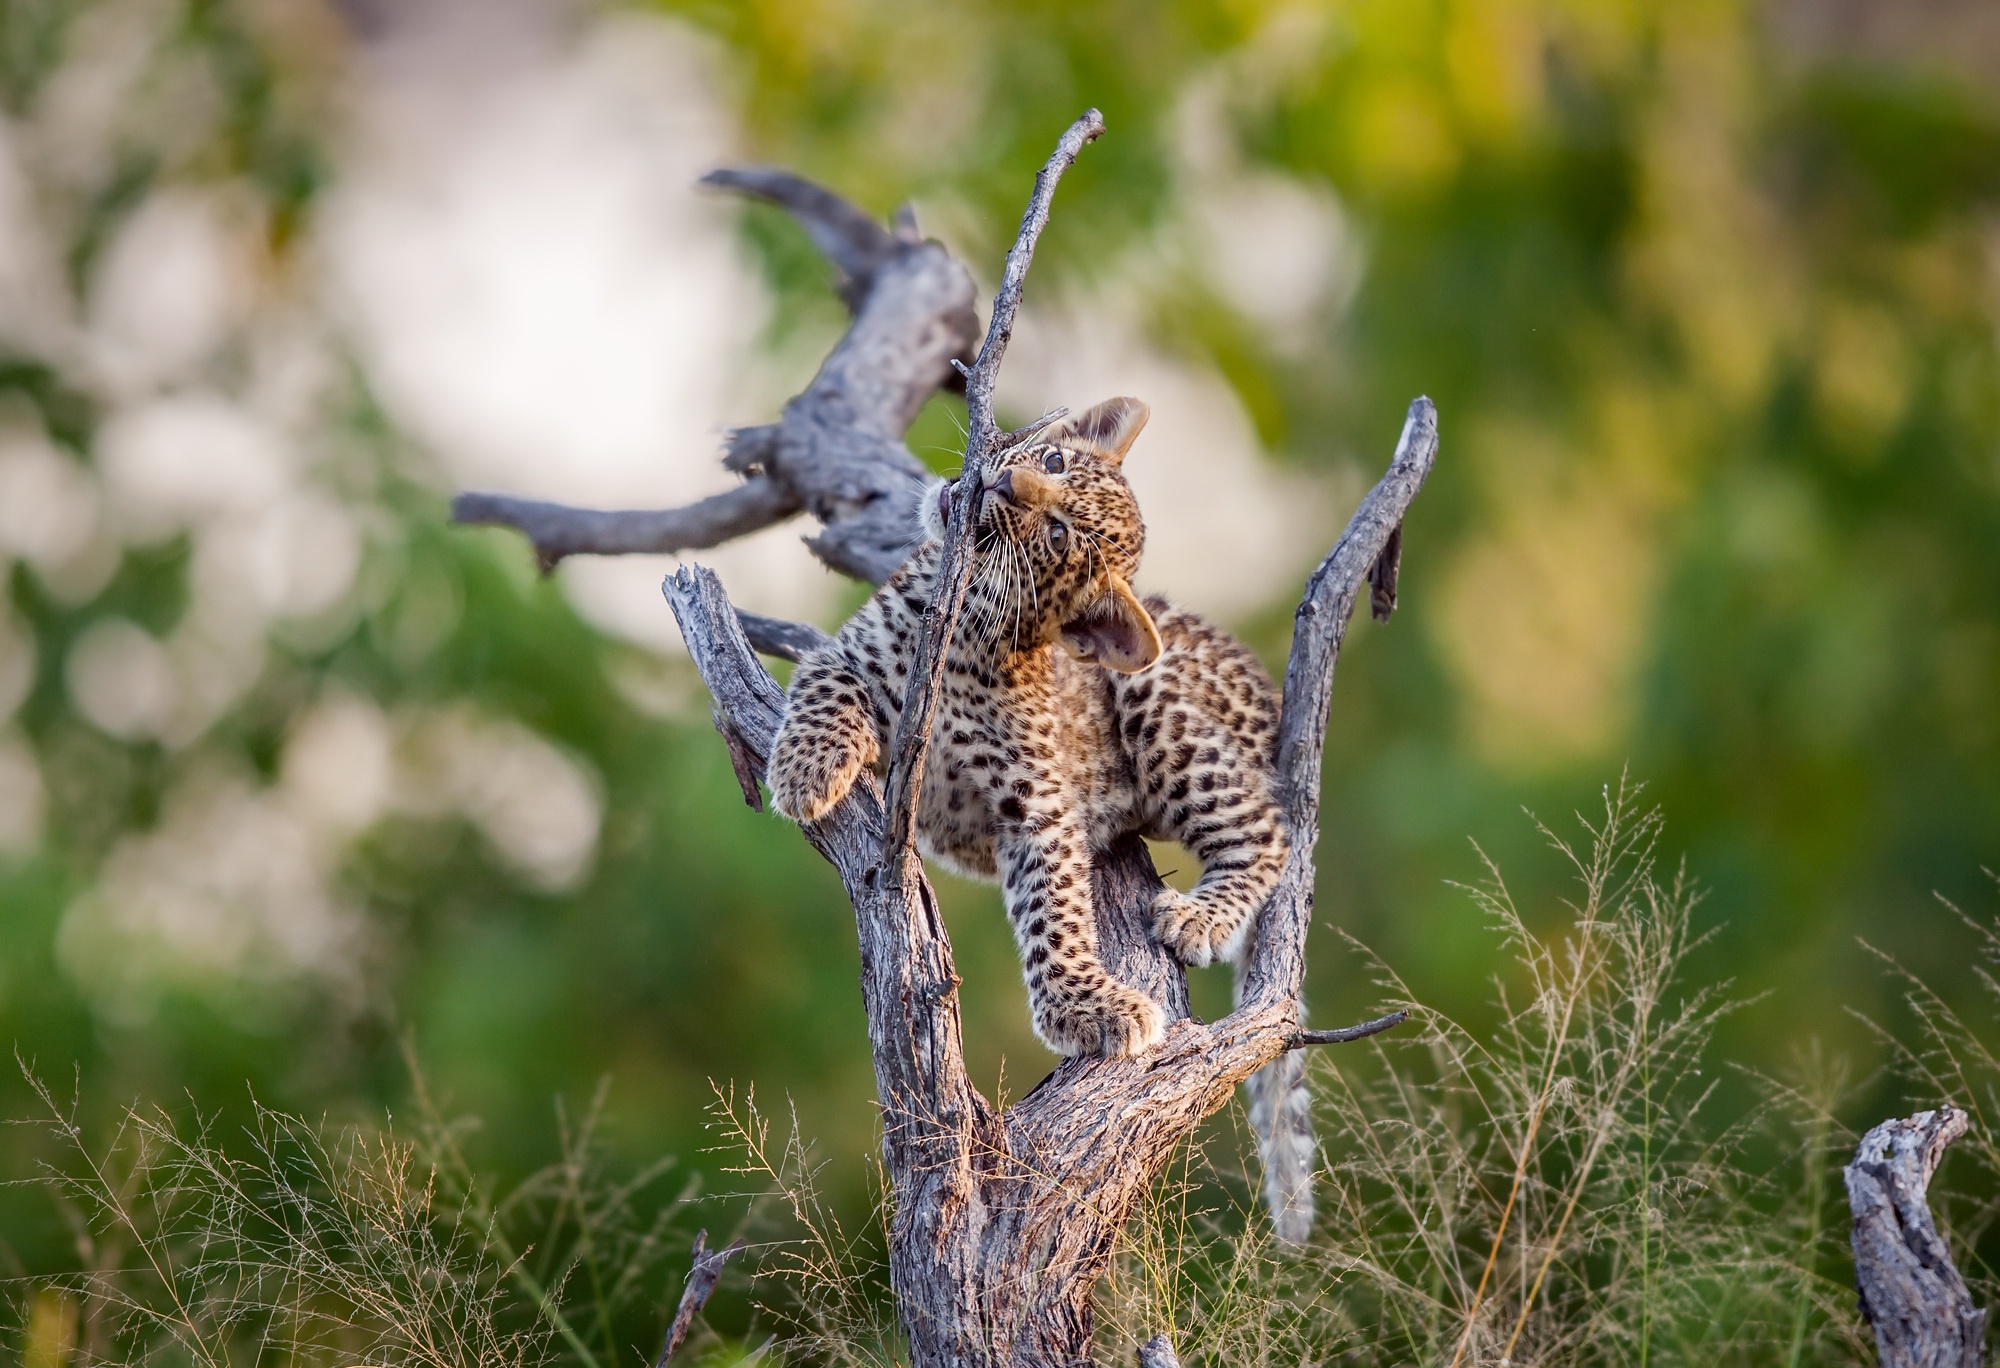 General 2000x1368 animals nature leopard closeup